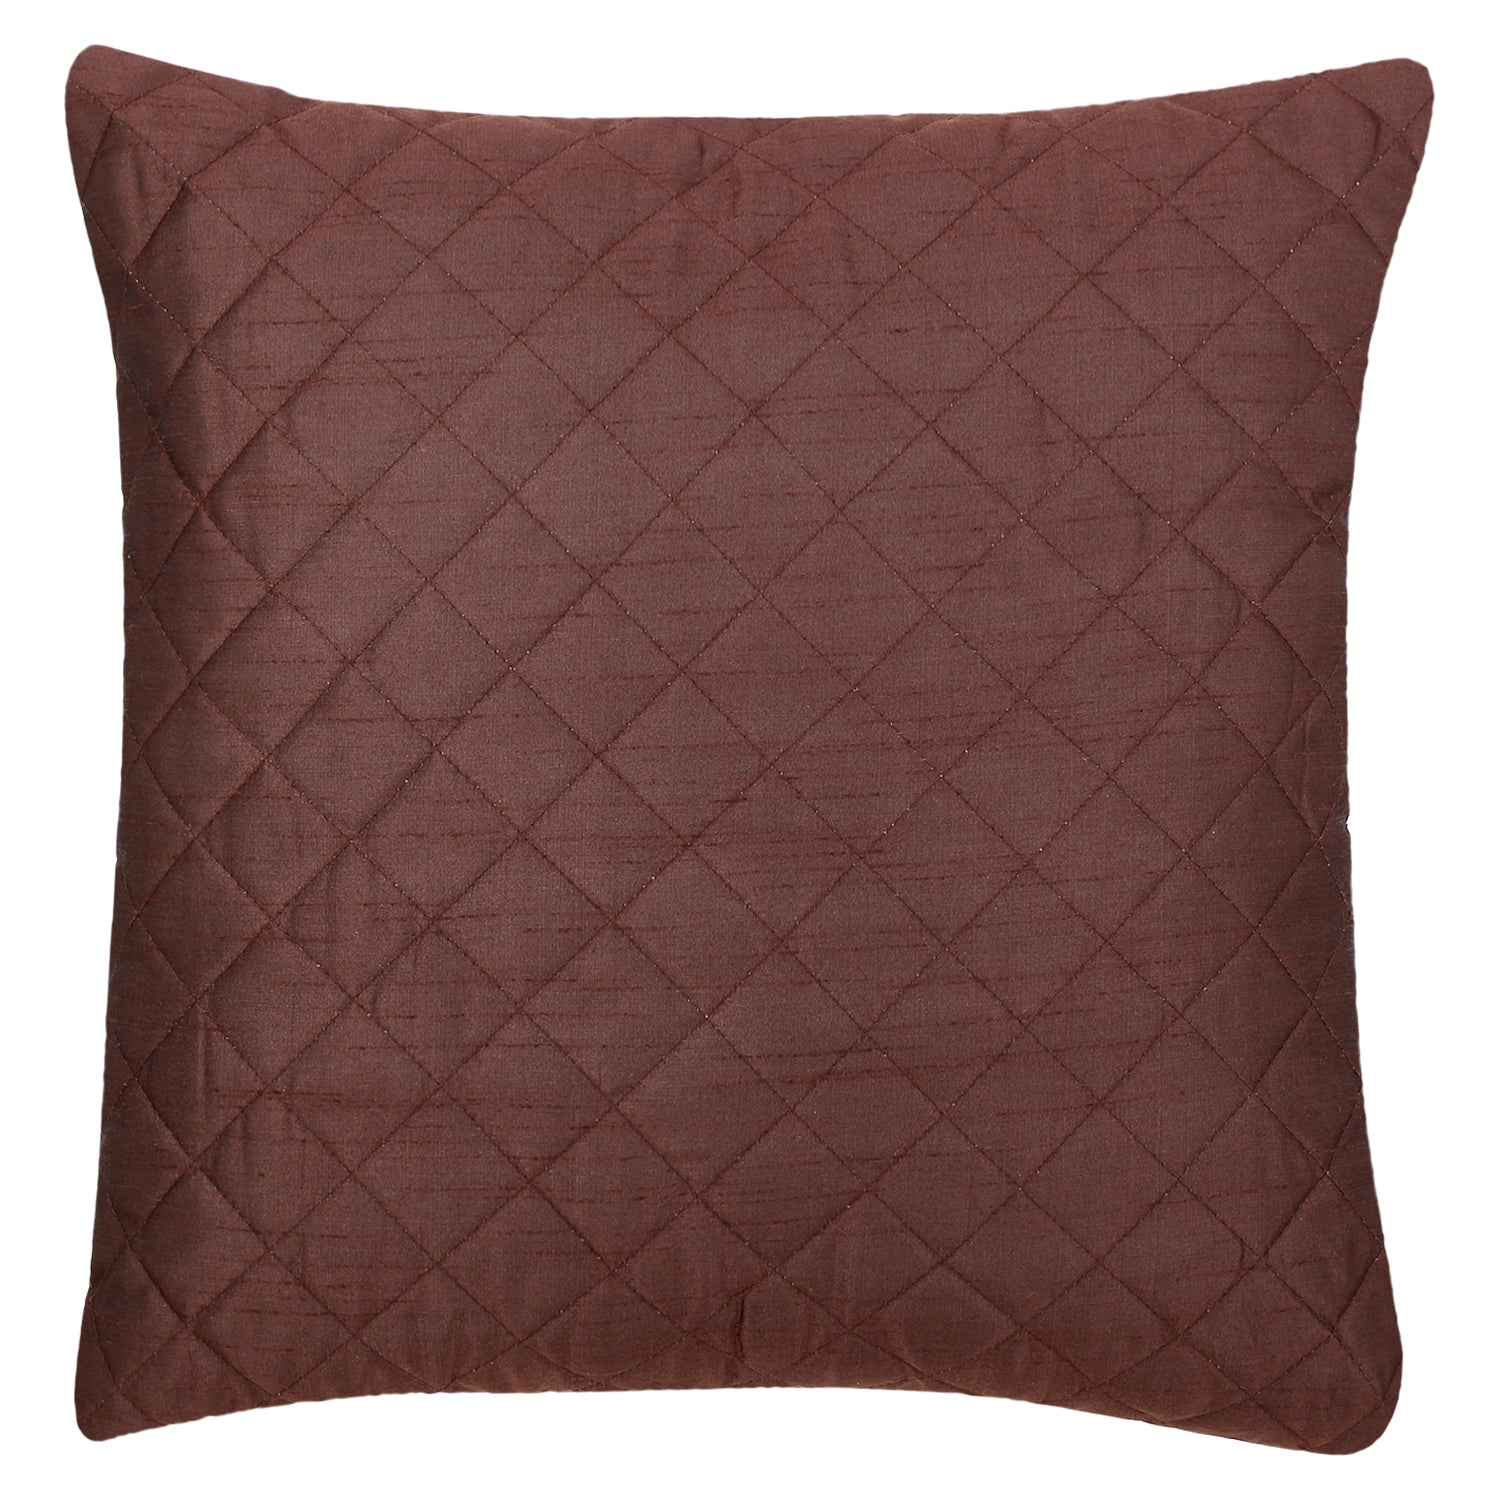 Desi Kapda Plain Brown Cushions Cover